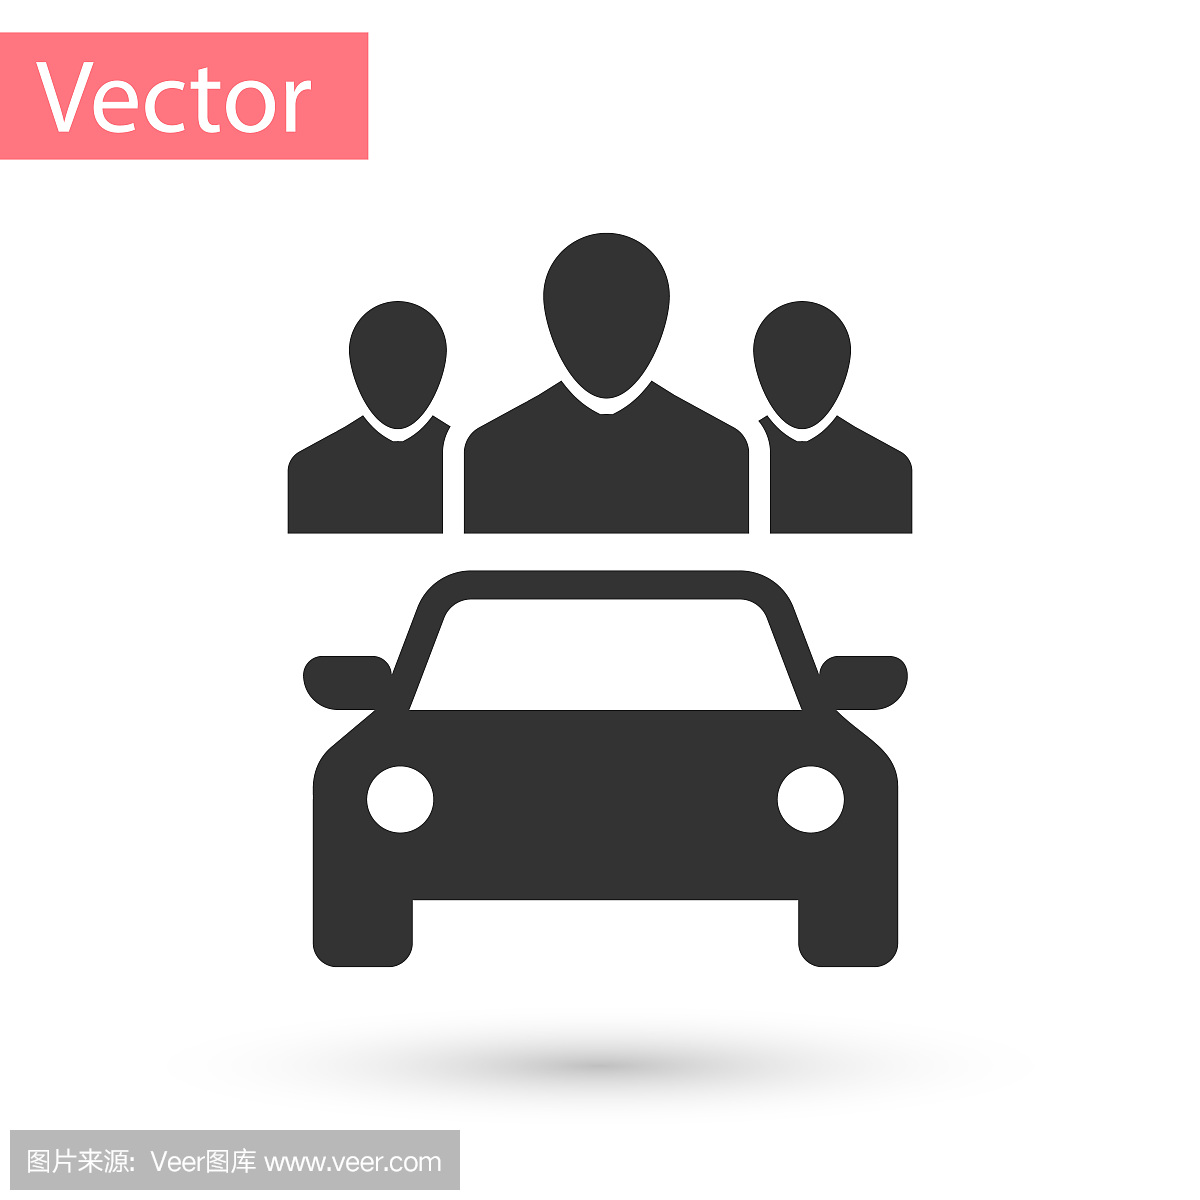 灰色汽车与一组人共享图标孤立在白色背景。车的迹象。运输租赁服务理念。矢量图